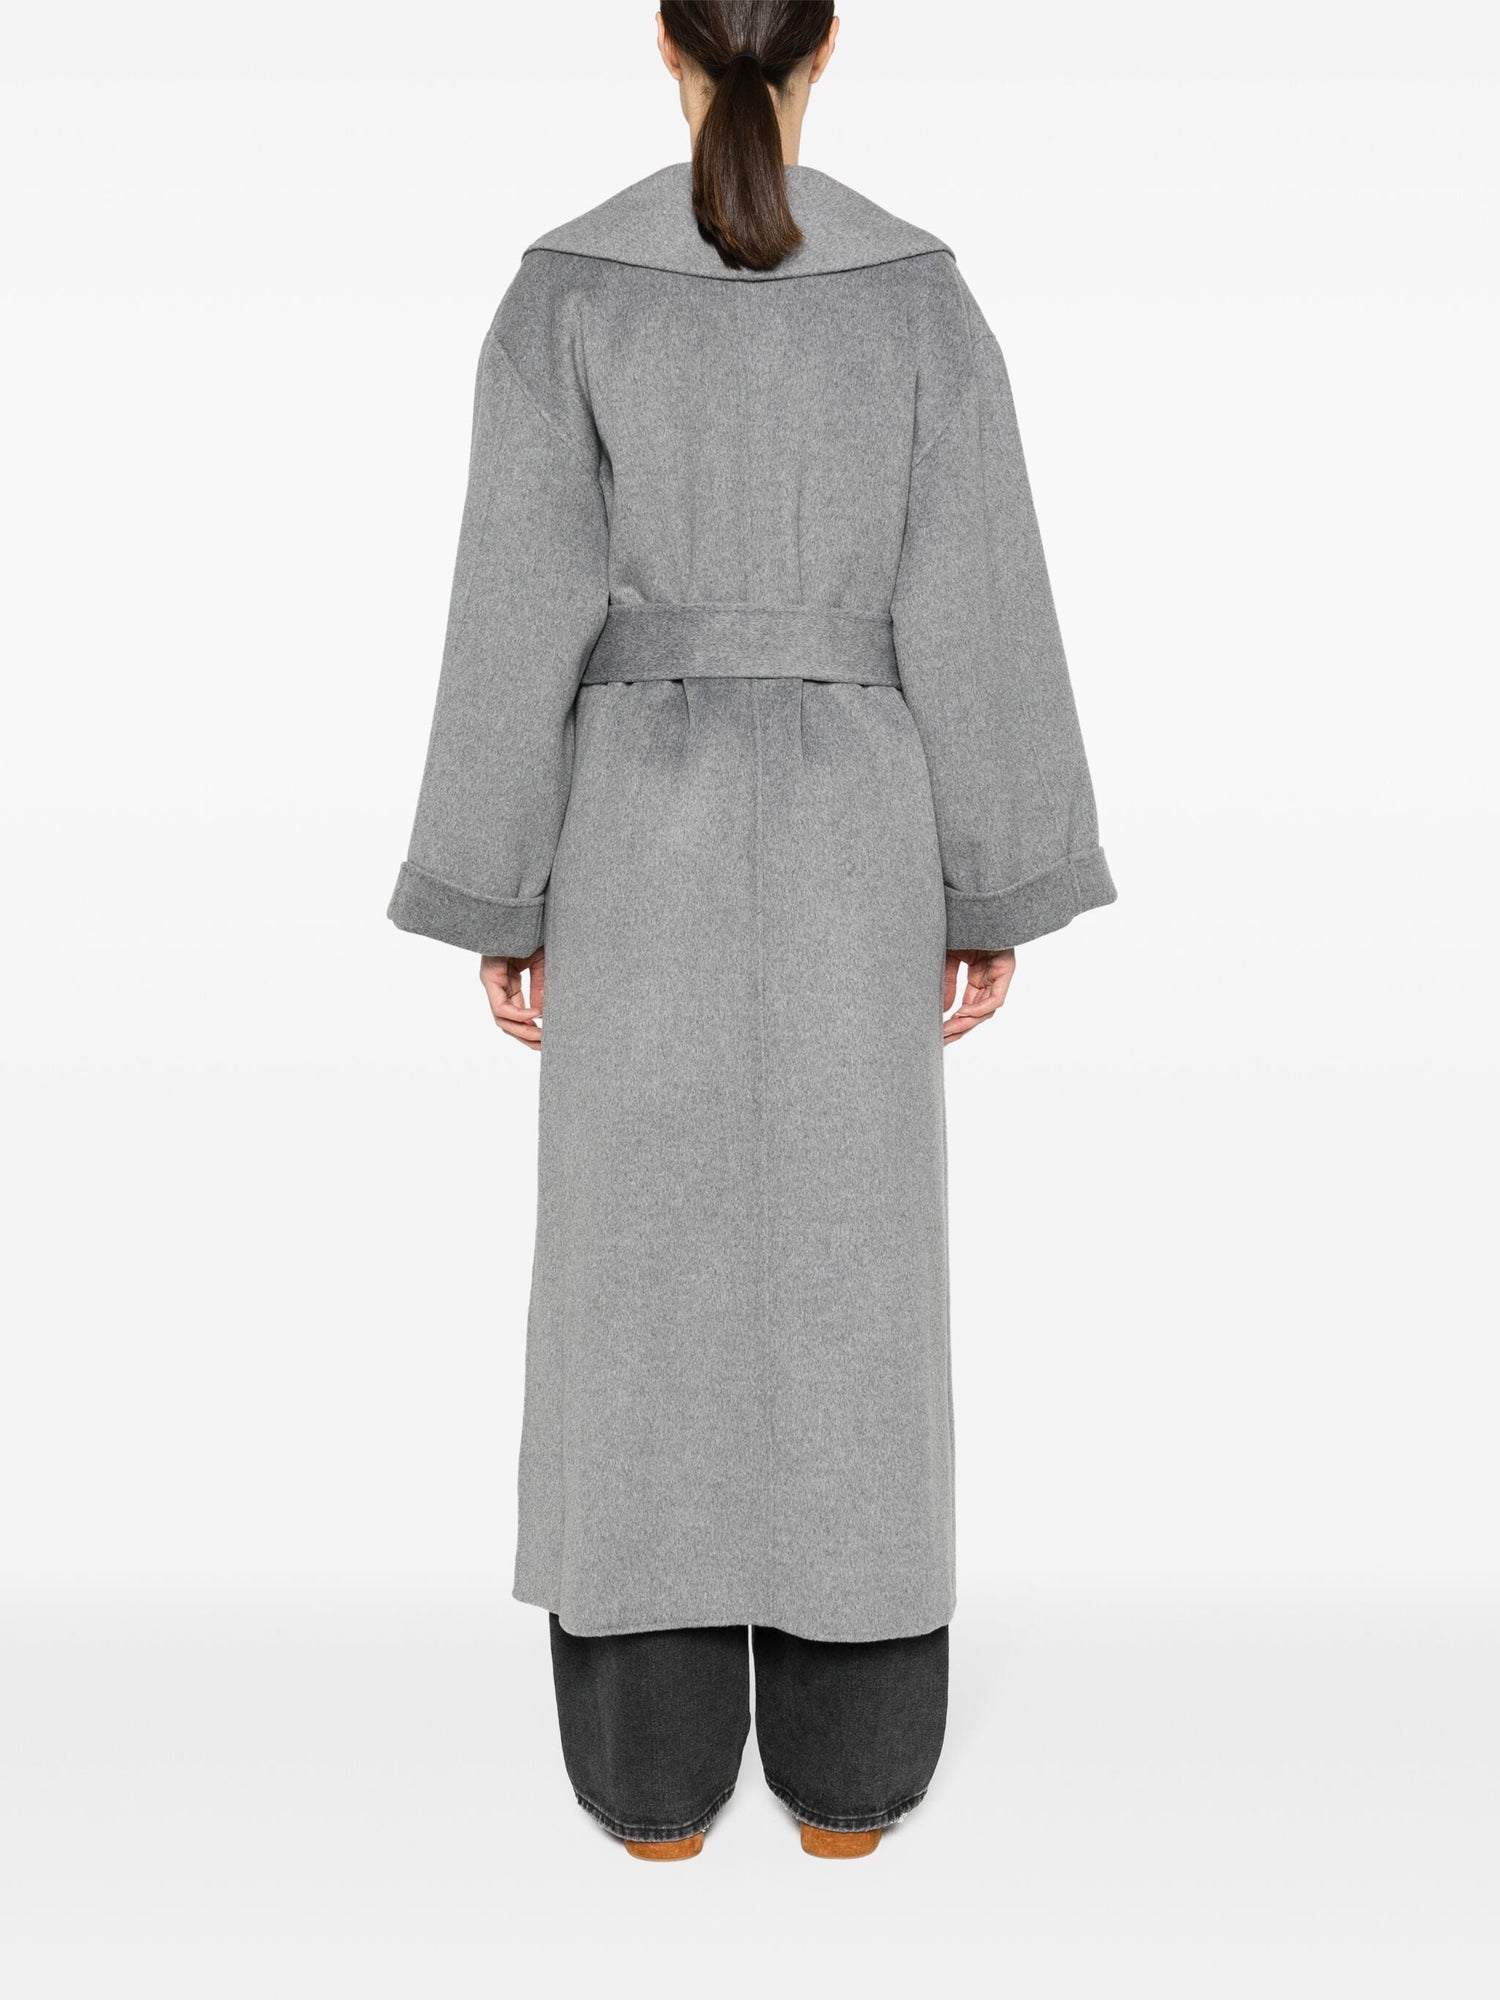 TRULLEM coat, grey